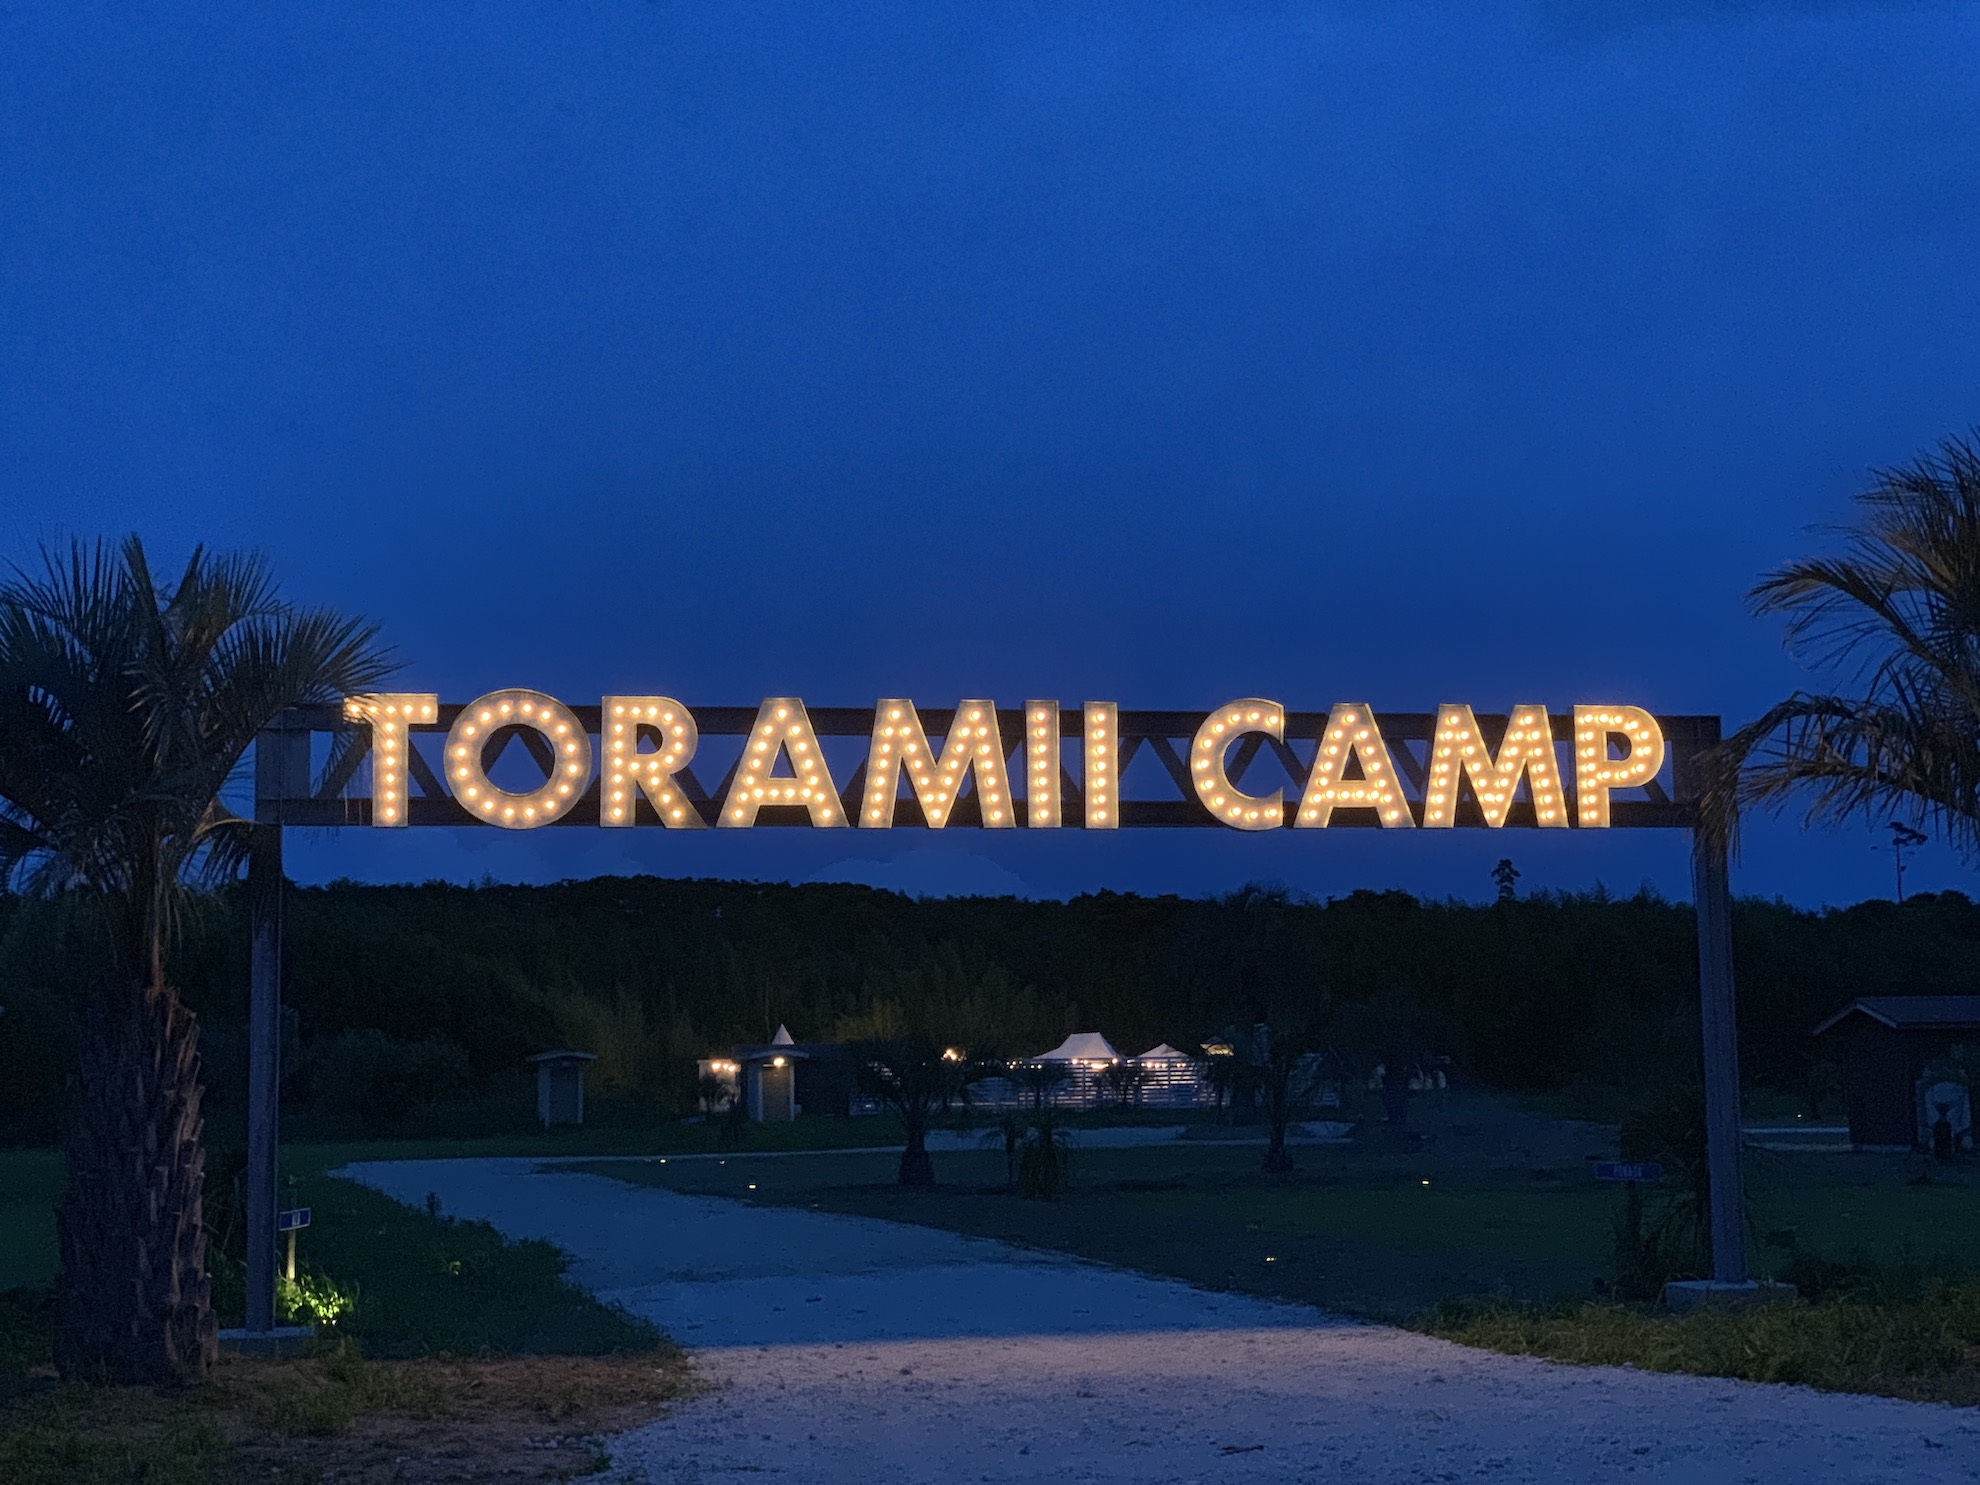 Ocean’s Camp TORAMII -Ichinomiyaの看板